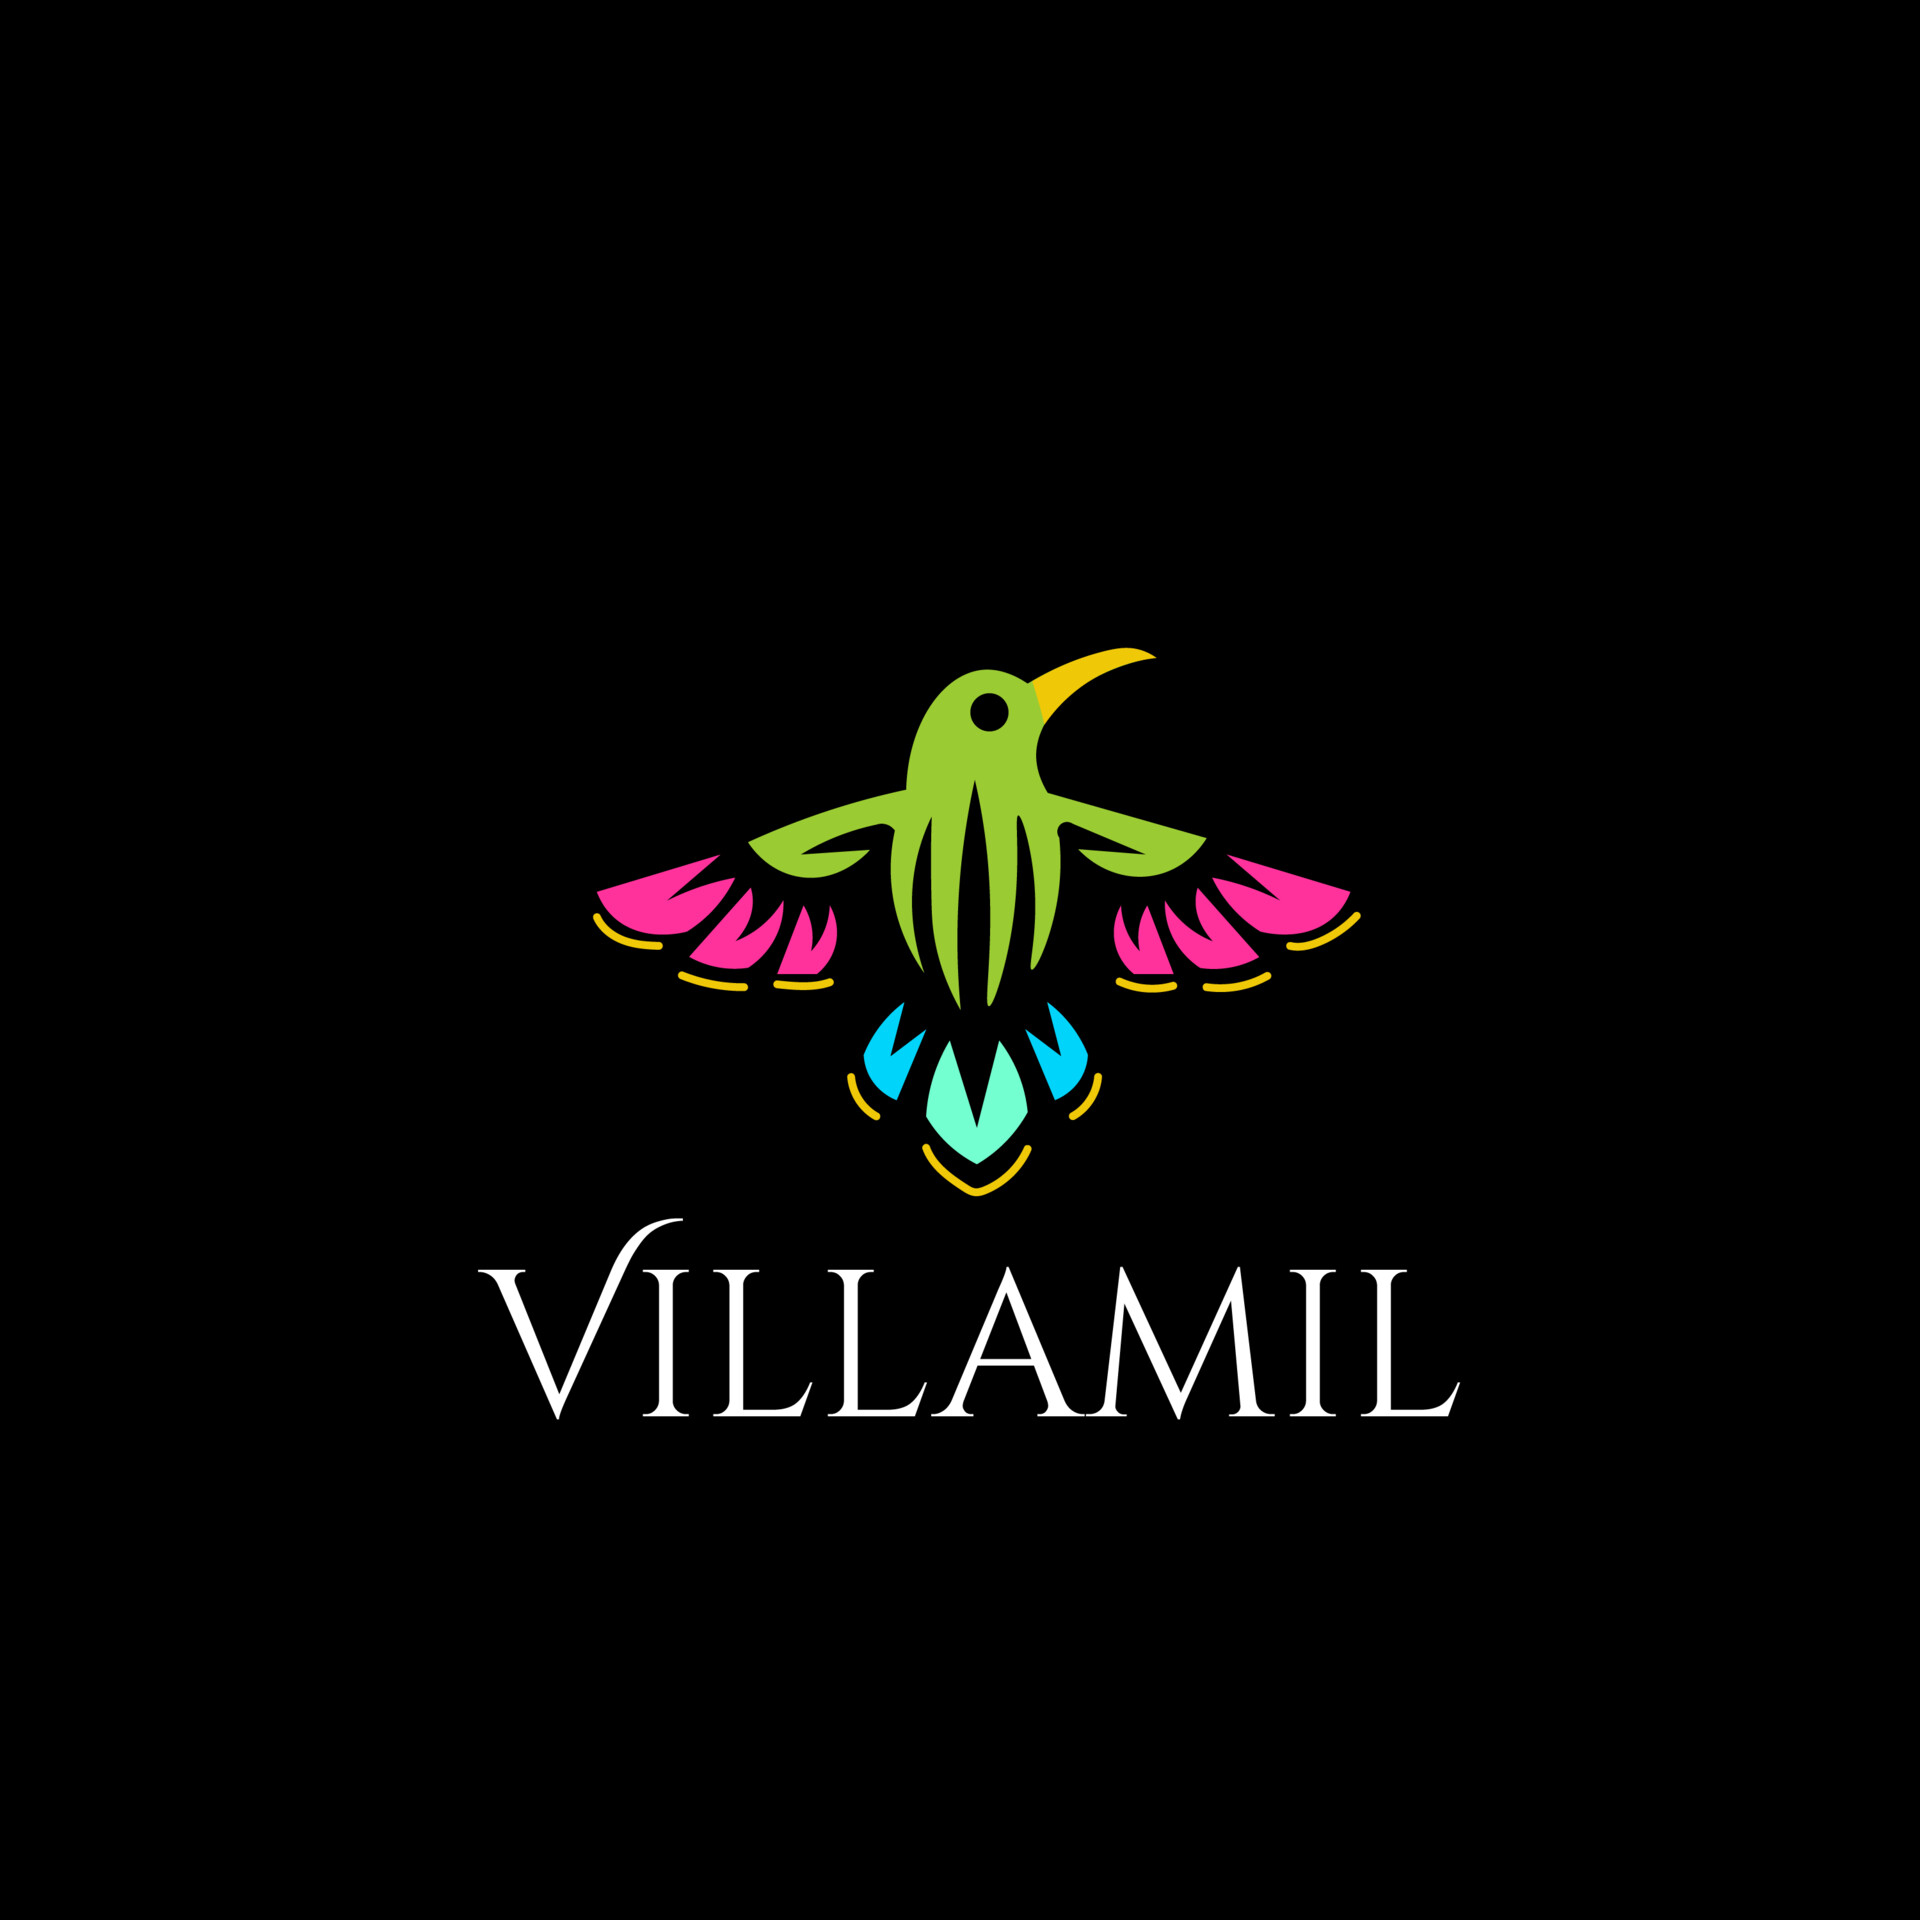 ArtStation - Villamil Logo